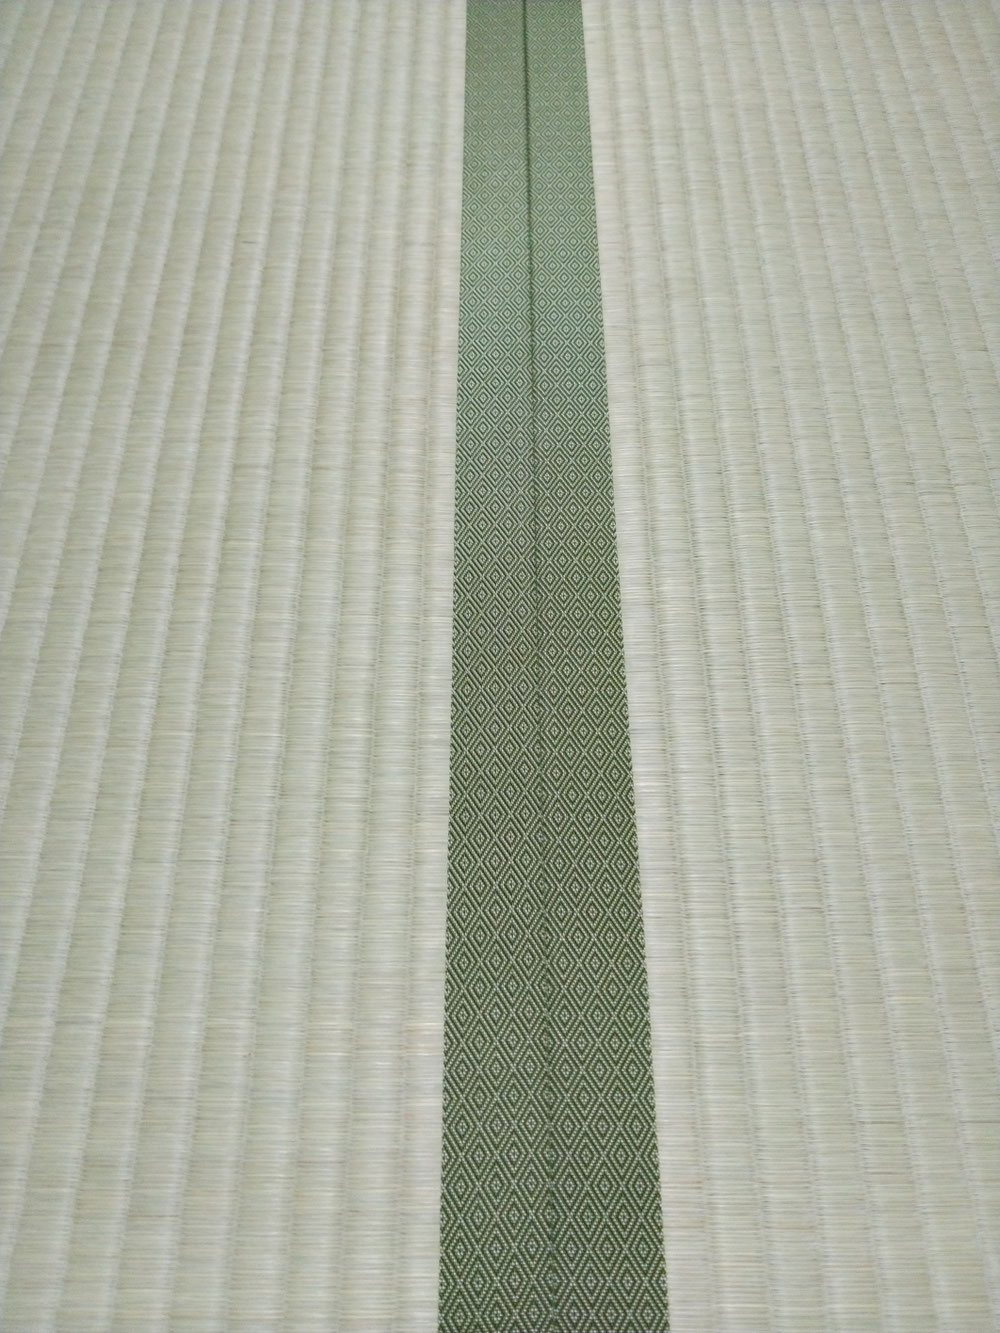 畳縁は、暮四季 No160を使用しました。